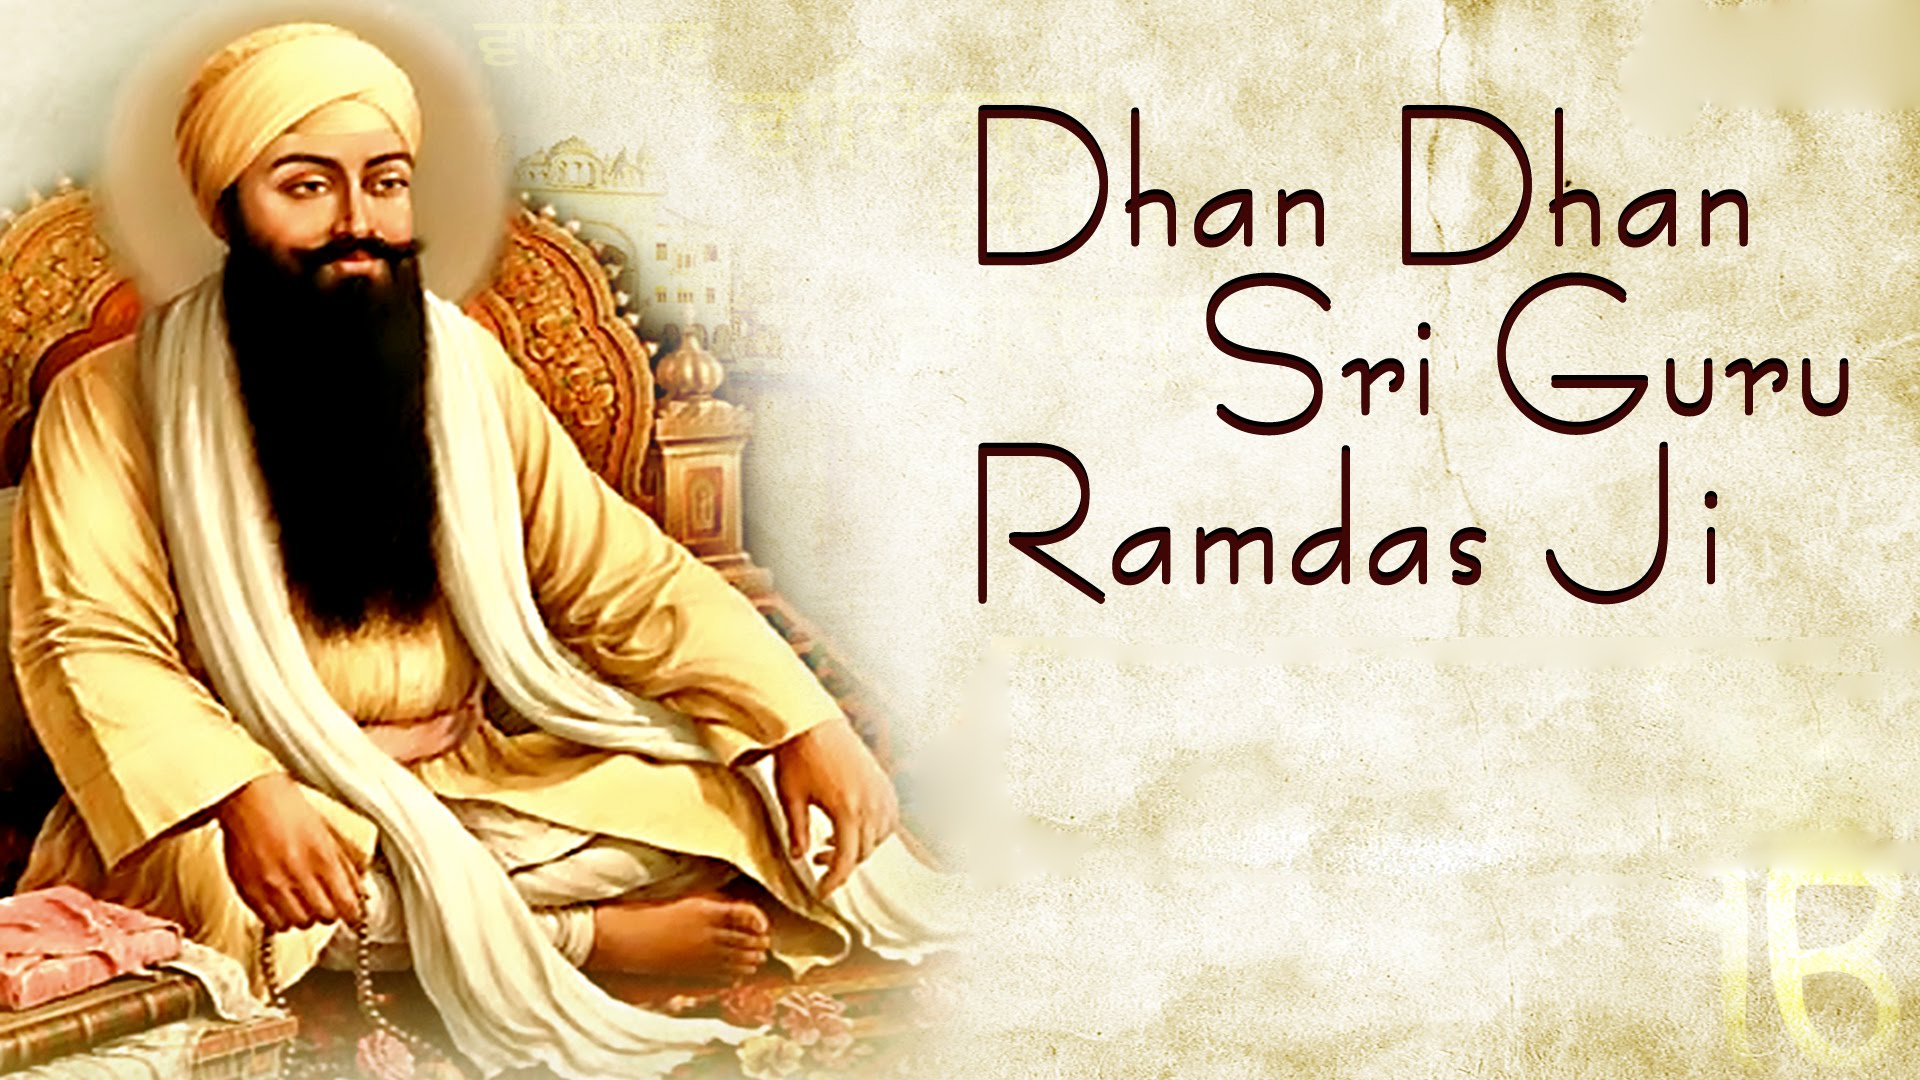 Shri Guru Ram Das Ji Images Download - God HD Wallpapers